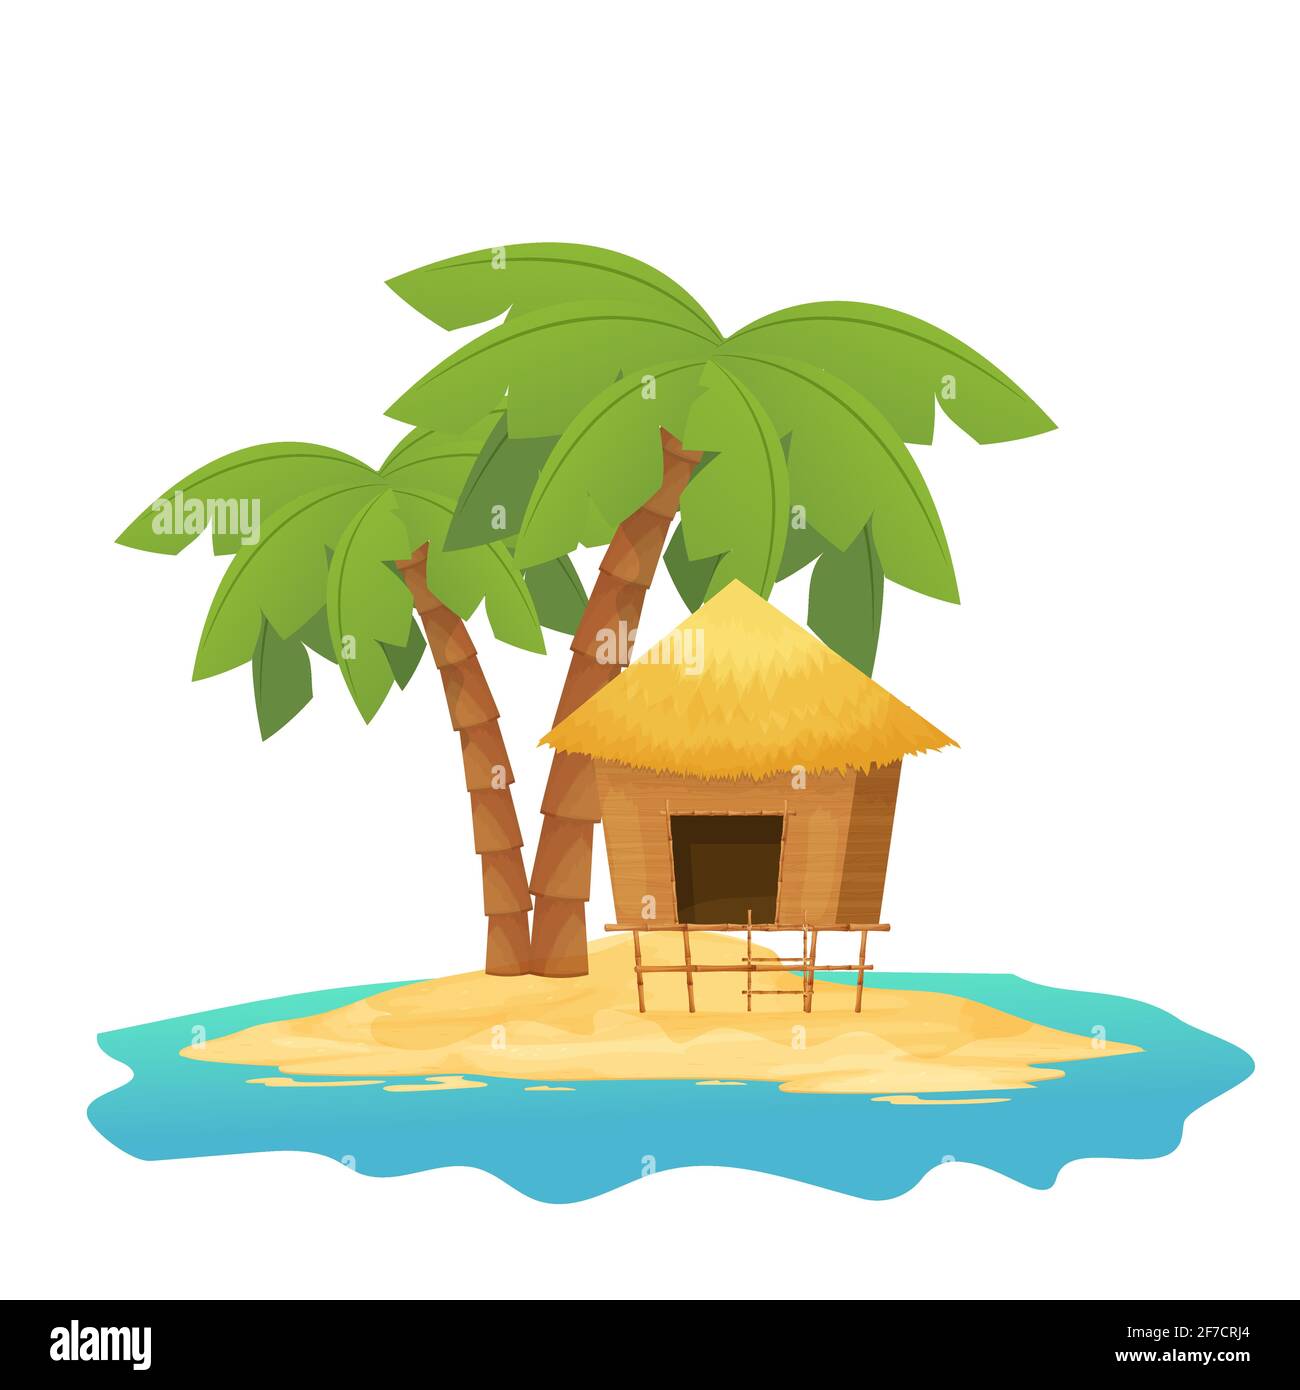 Strandhütte oder Bungalow mit Strohdach, Holz auf tropischer Insel mit Palmen im Cartoon-Stil isoliert auf weißem Hintergrund. Bambushütte, kleines Haus exotisches Objekt. Vektorgrafik Stock Vektor